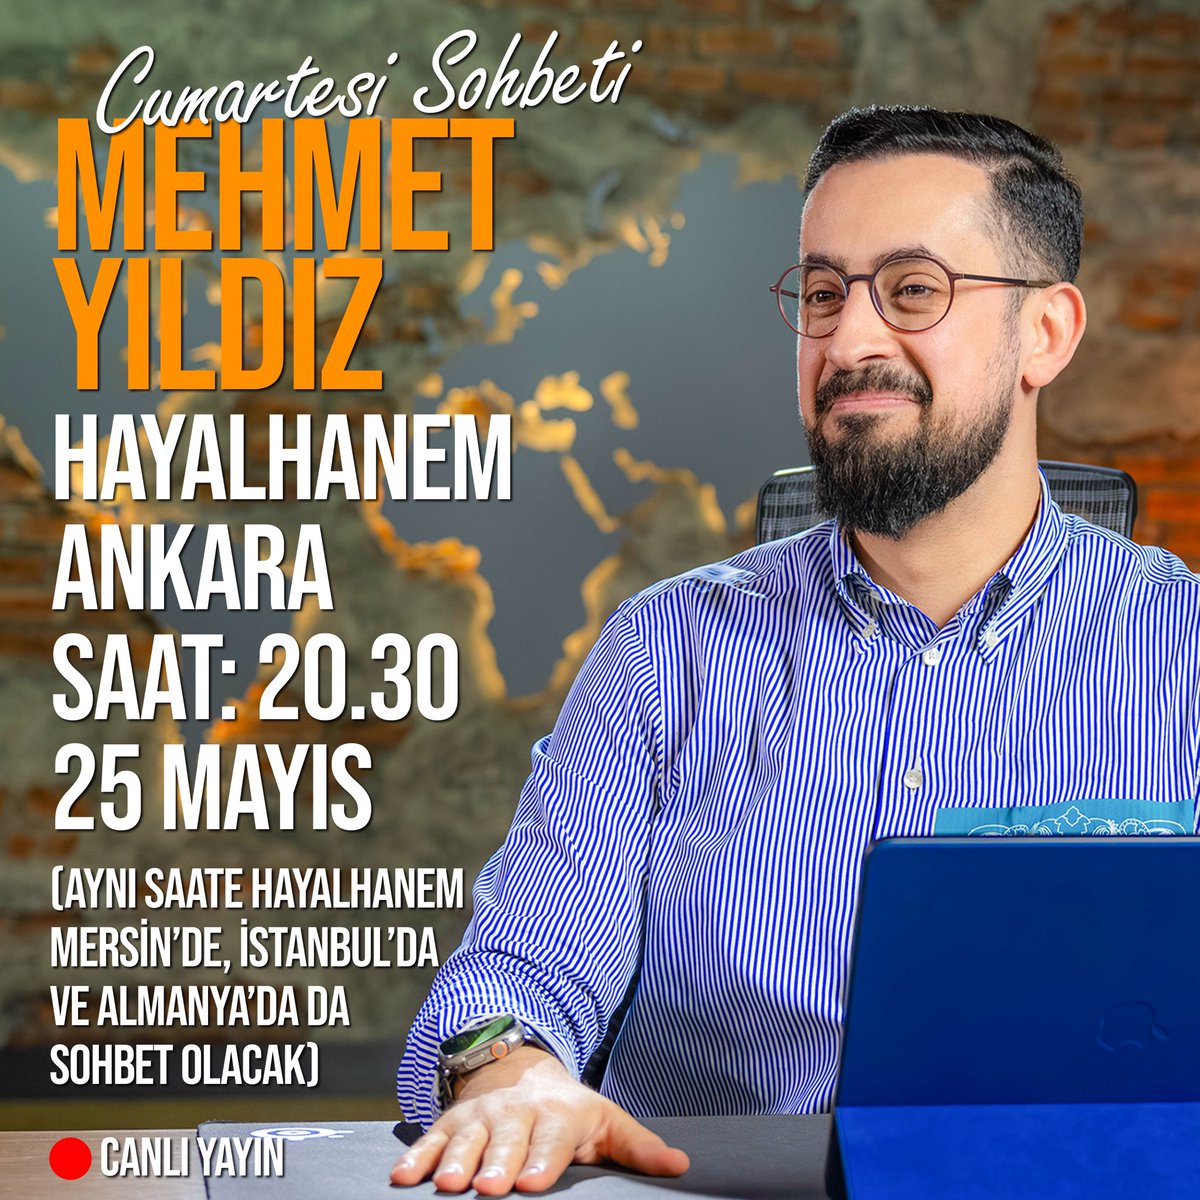 Mehmet Yıldız’ın Hayalhanem Ankara Cumartesi Sohbetine herkesi bekliyoruz. 25 Mayıs Saat 20.30’da (Hayalhanem Mersin, İstanbul ve Almanya’da da aynı saatte sohbet olacaktır) (Gelemeyenler için YouTube canlı yayın) İletişim: +90 531 224 03 66